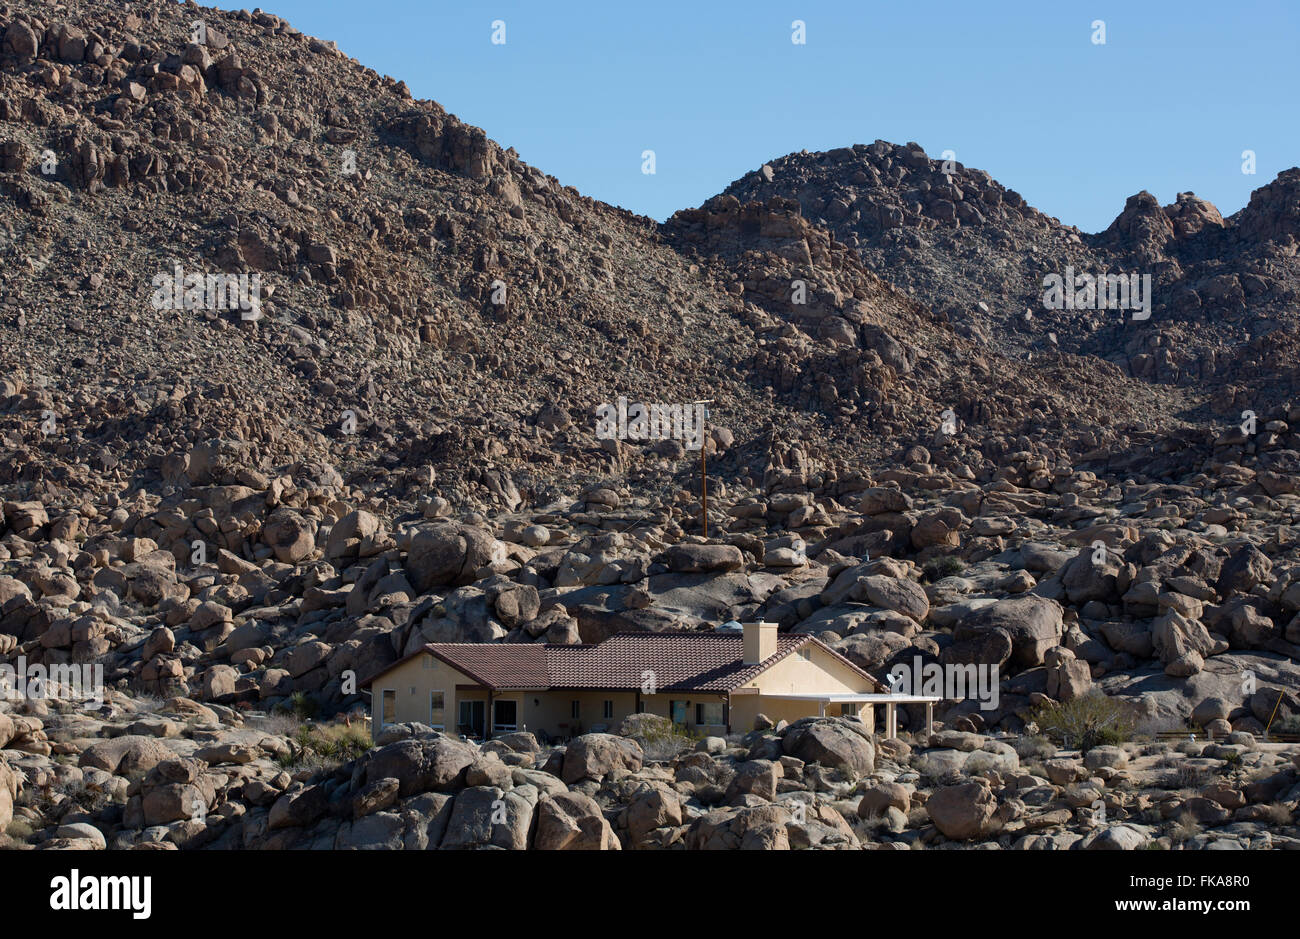 Haus in Wüstenumgebung, Twentynine Palms, Kalifornien, USA Stockfoto